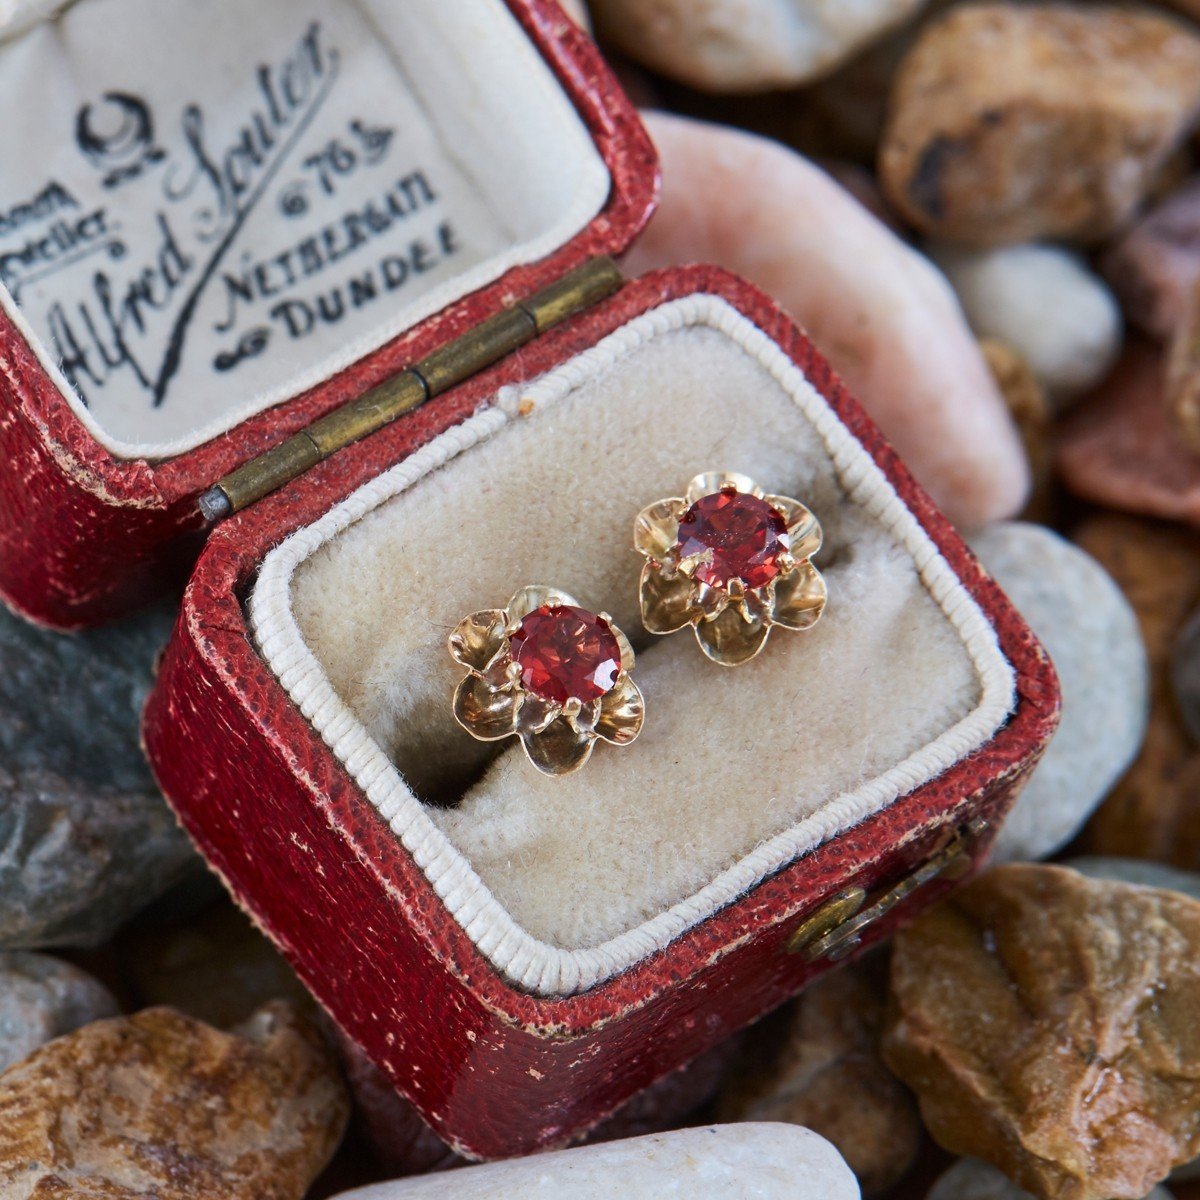 EraGem Antique Diamonds in 6-Prong Stud Earrings